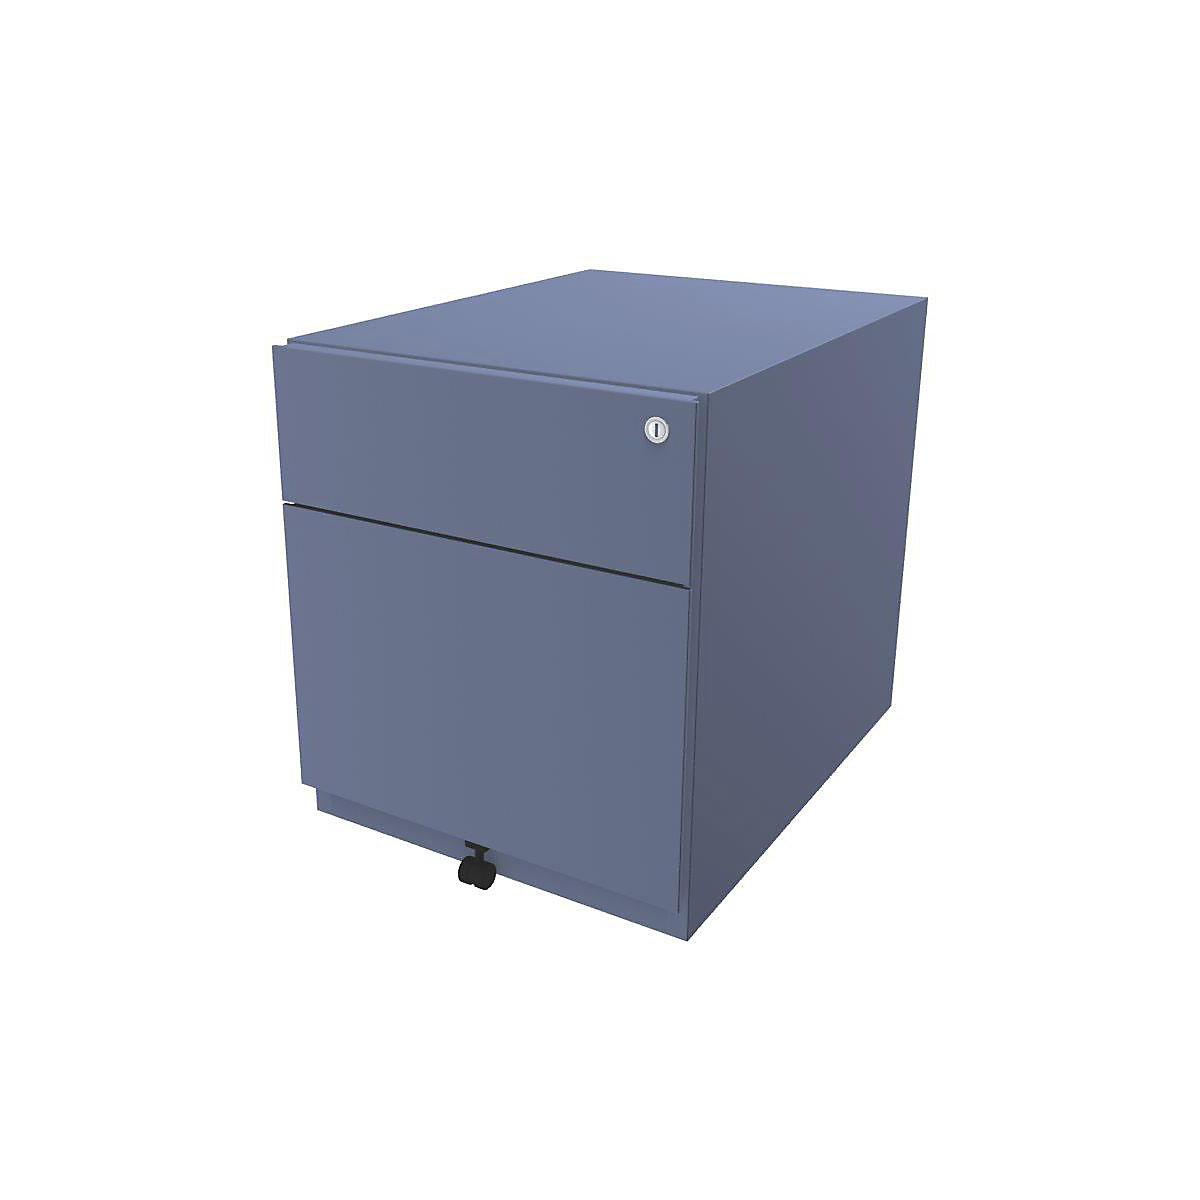 Rollcontainer Note™, mit 1 Hängeregistratur, 1 Universalschublade BISLEY, HxBxT 495 x 420 x 565 mm, mit Griffleiste, blau